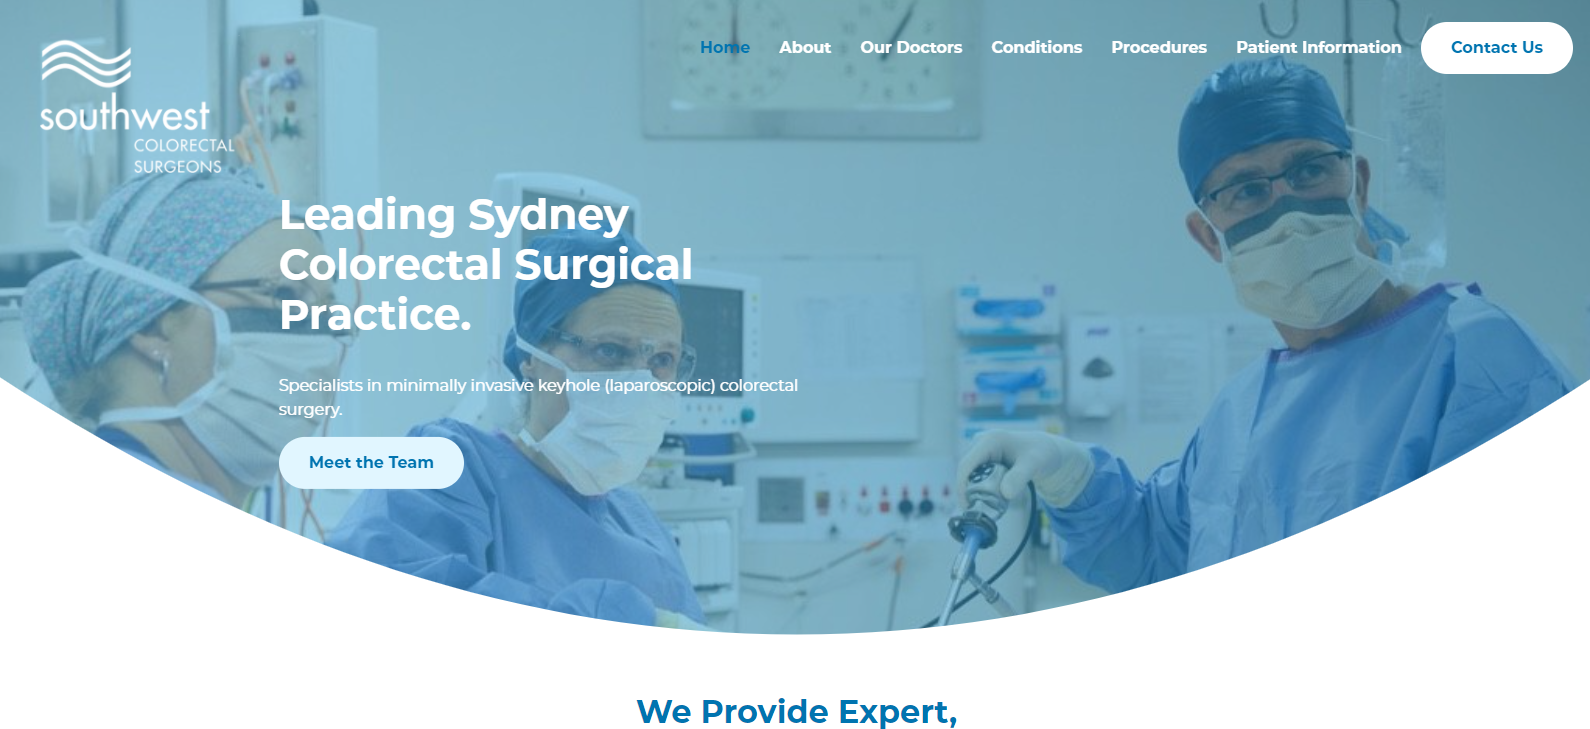 Southwest Colorectal Surgeons | Sydney